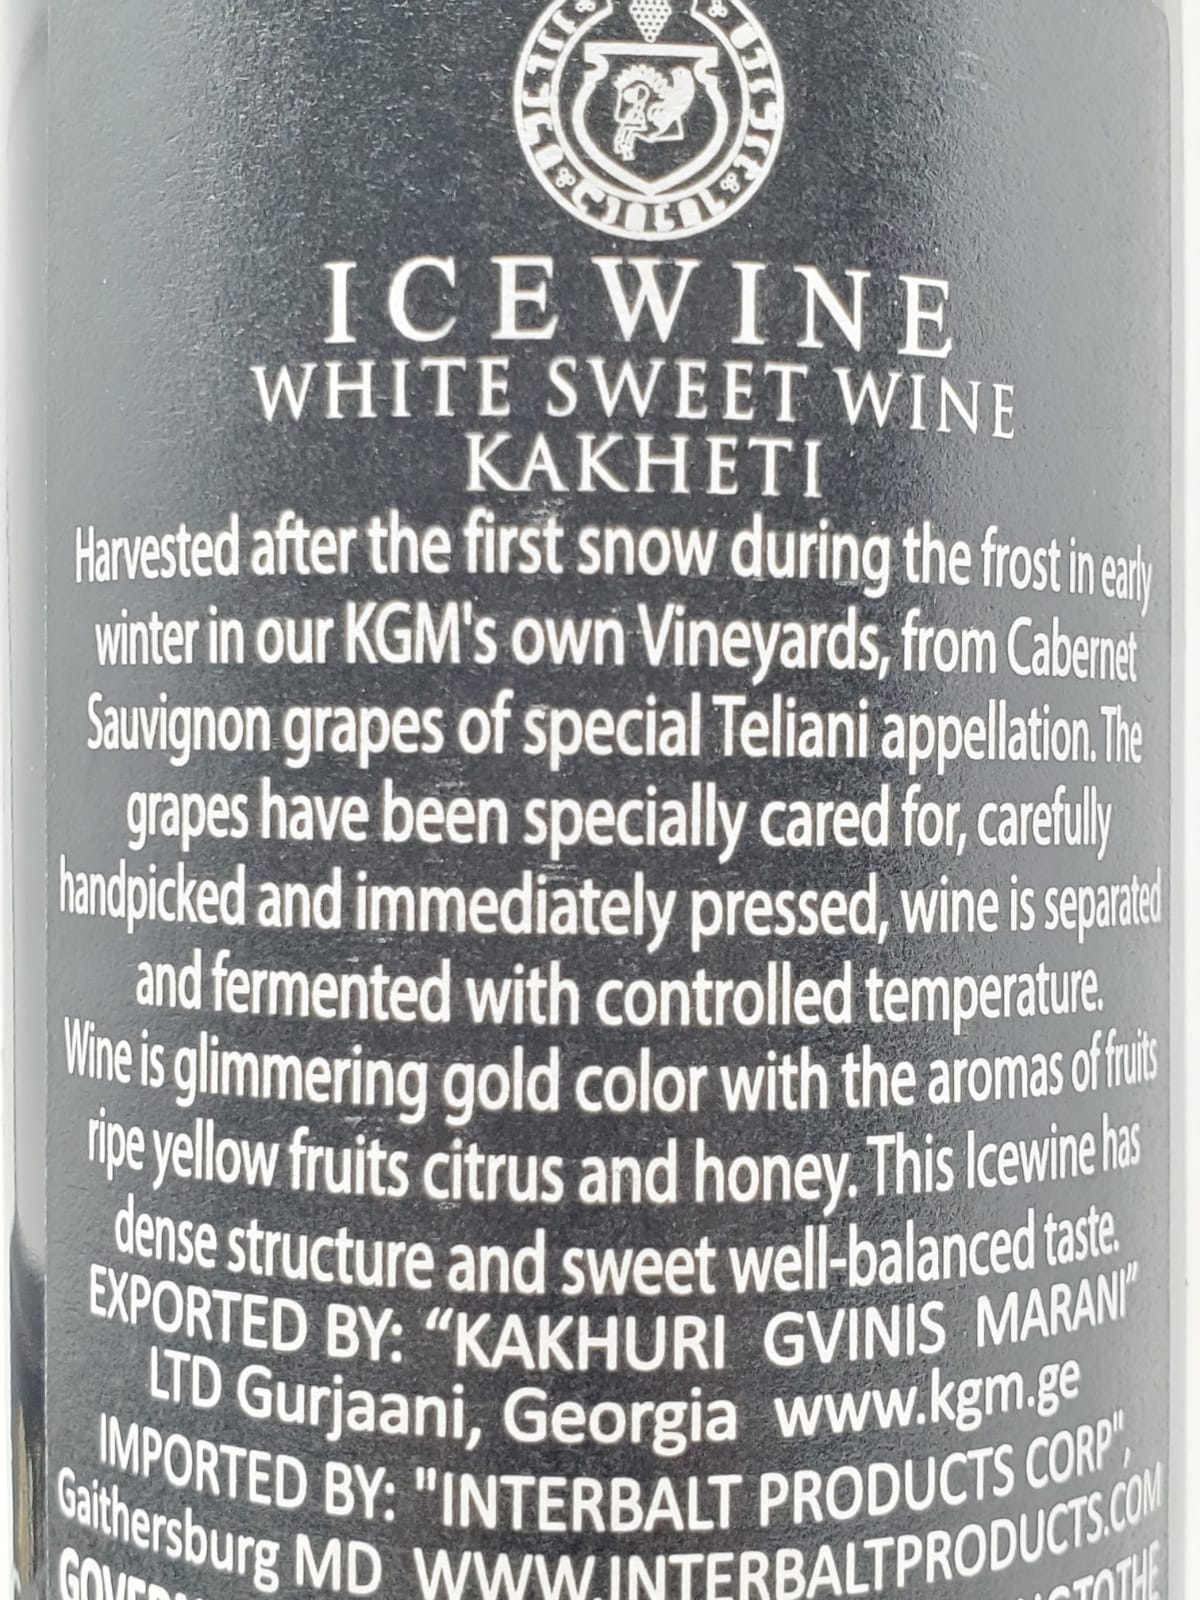 KGM GEORGIAN WHITE SWEET ICE WINE 750ml